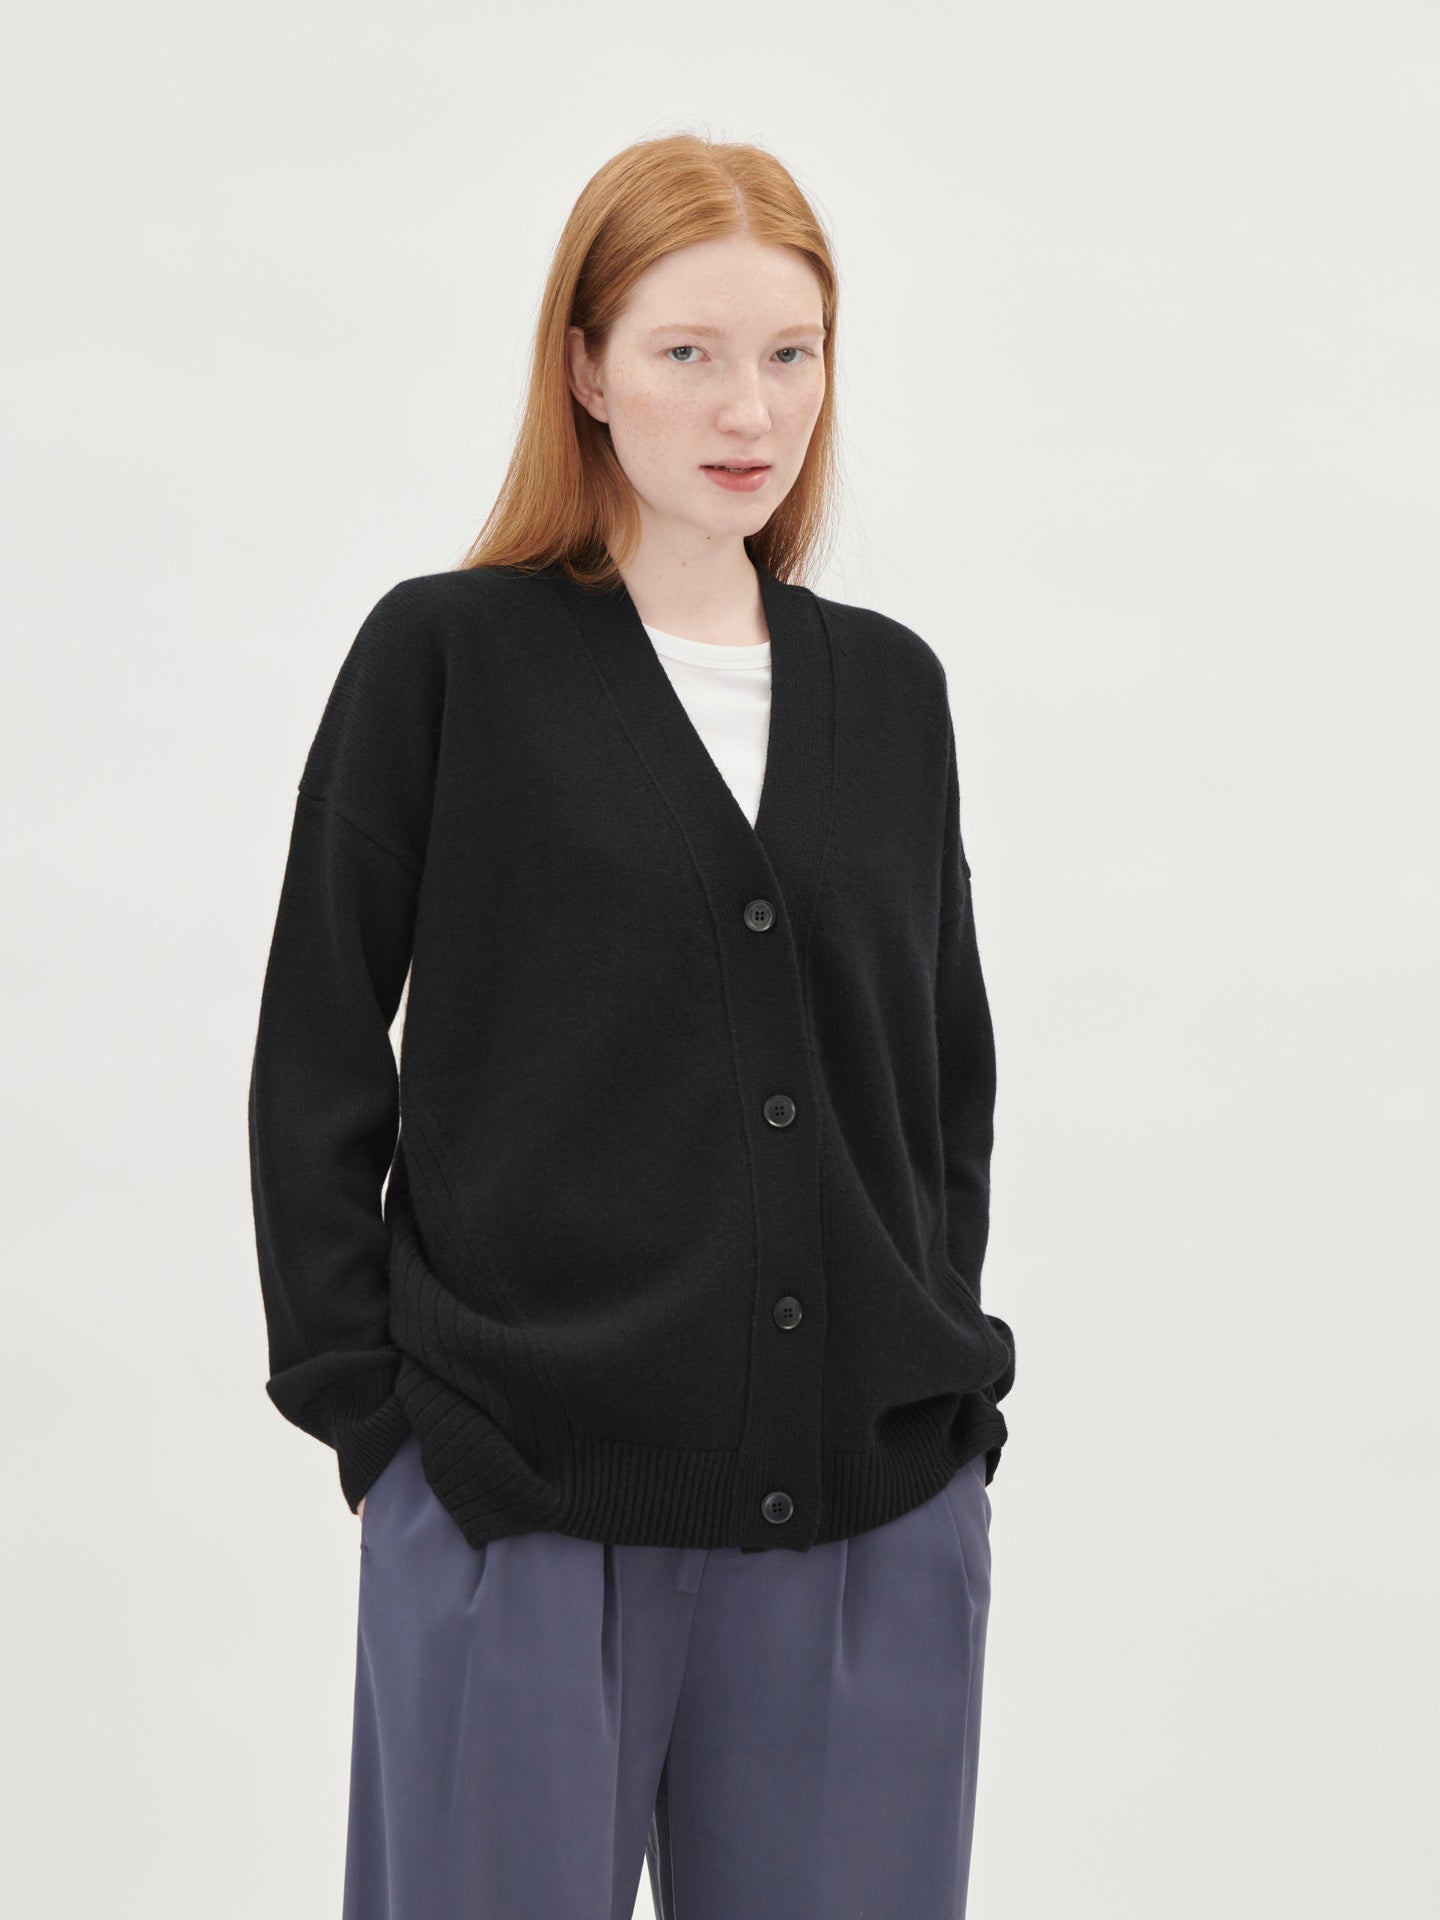 Women's Cashmere Contemporary V-Neck Cardigan Black - Gobi Cashmere